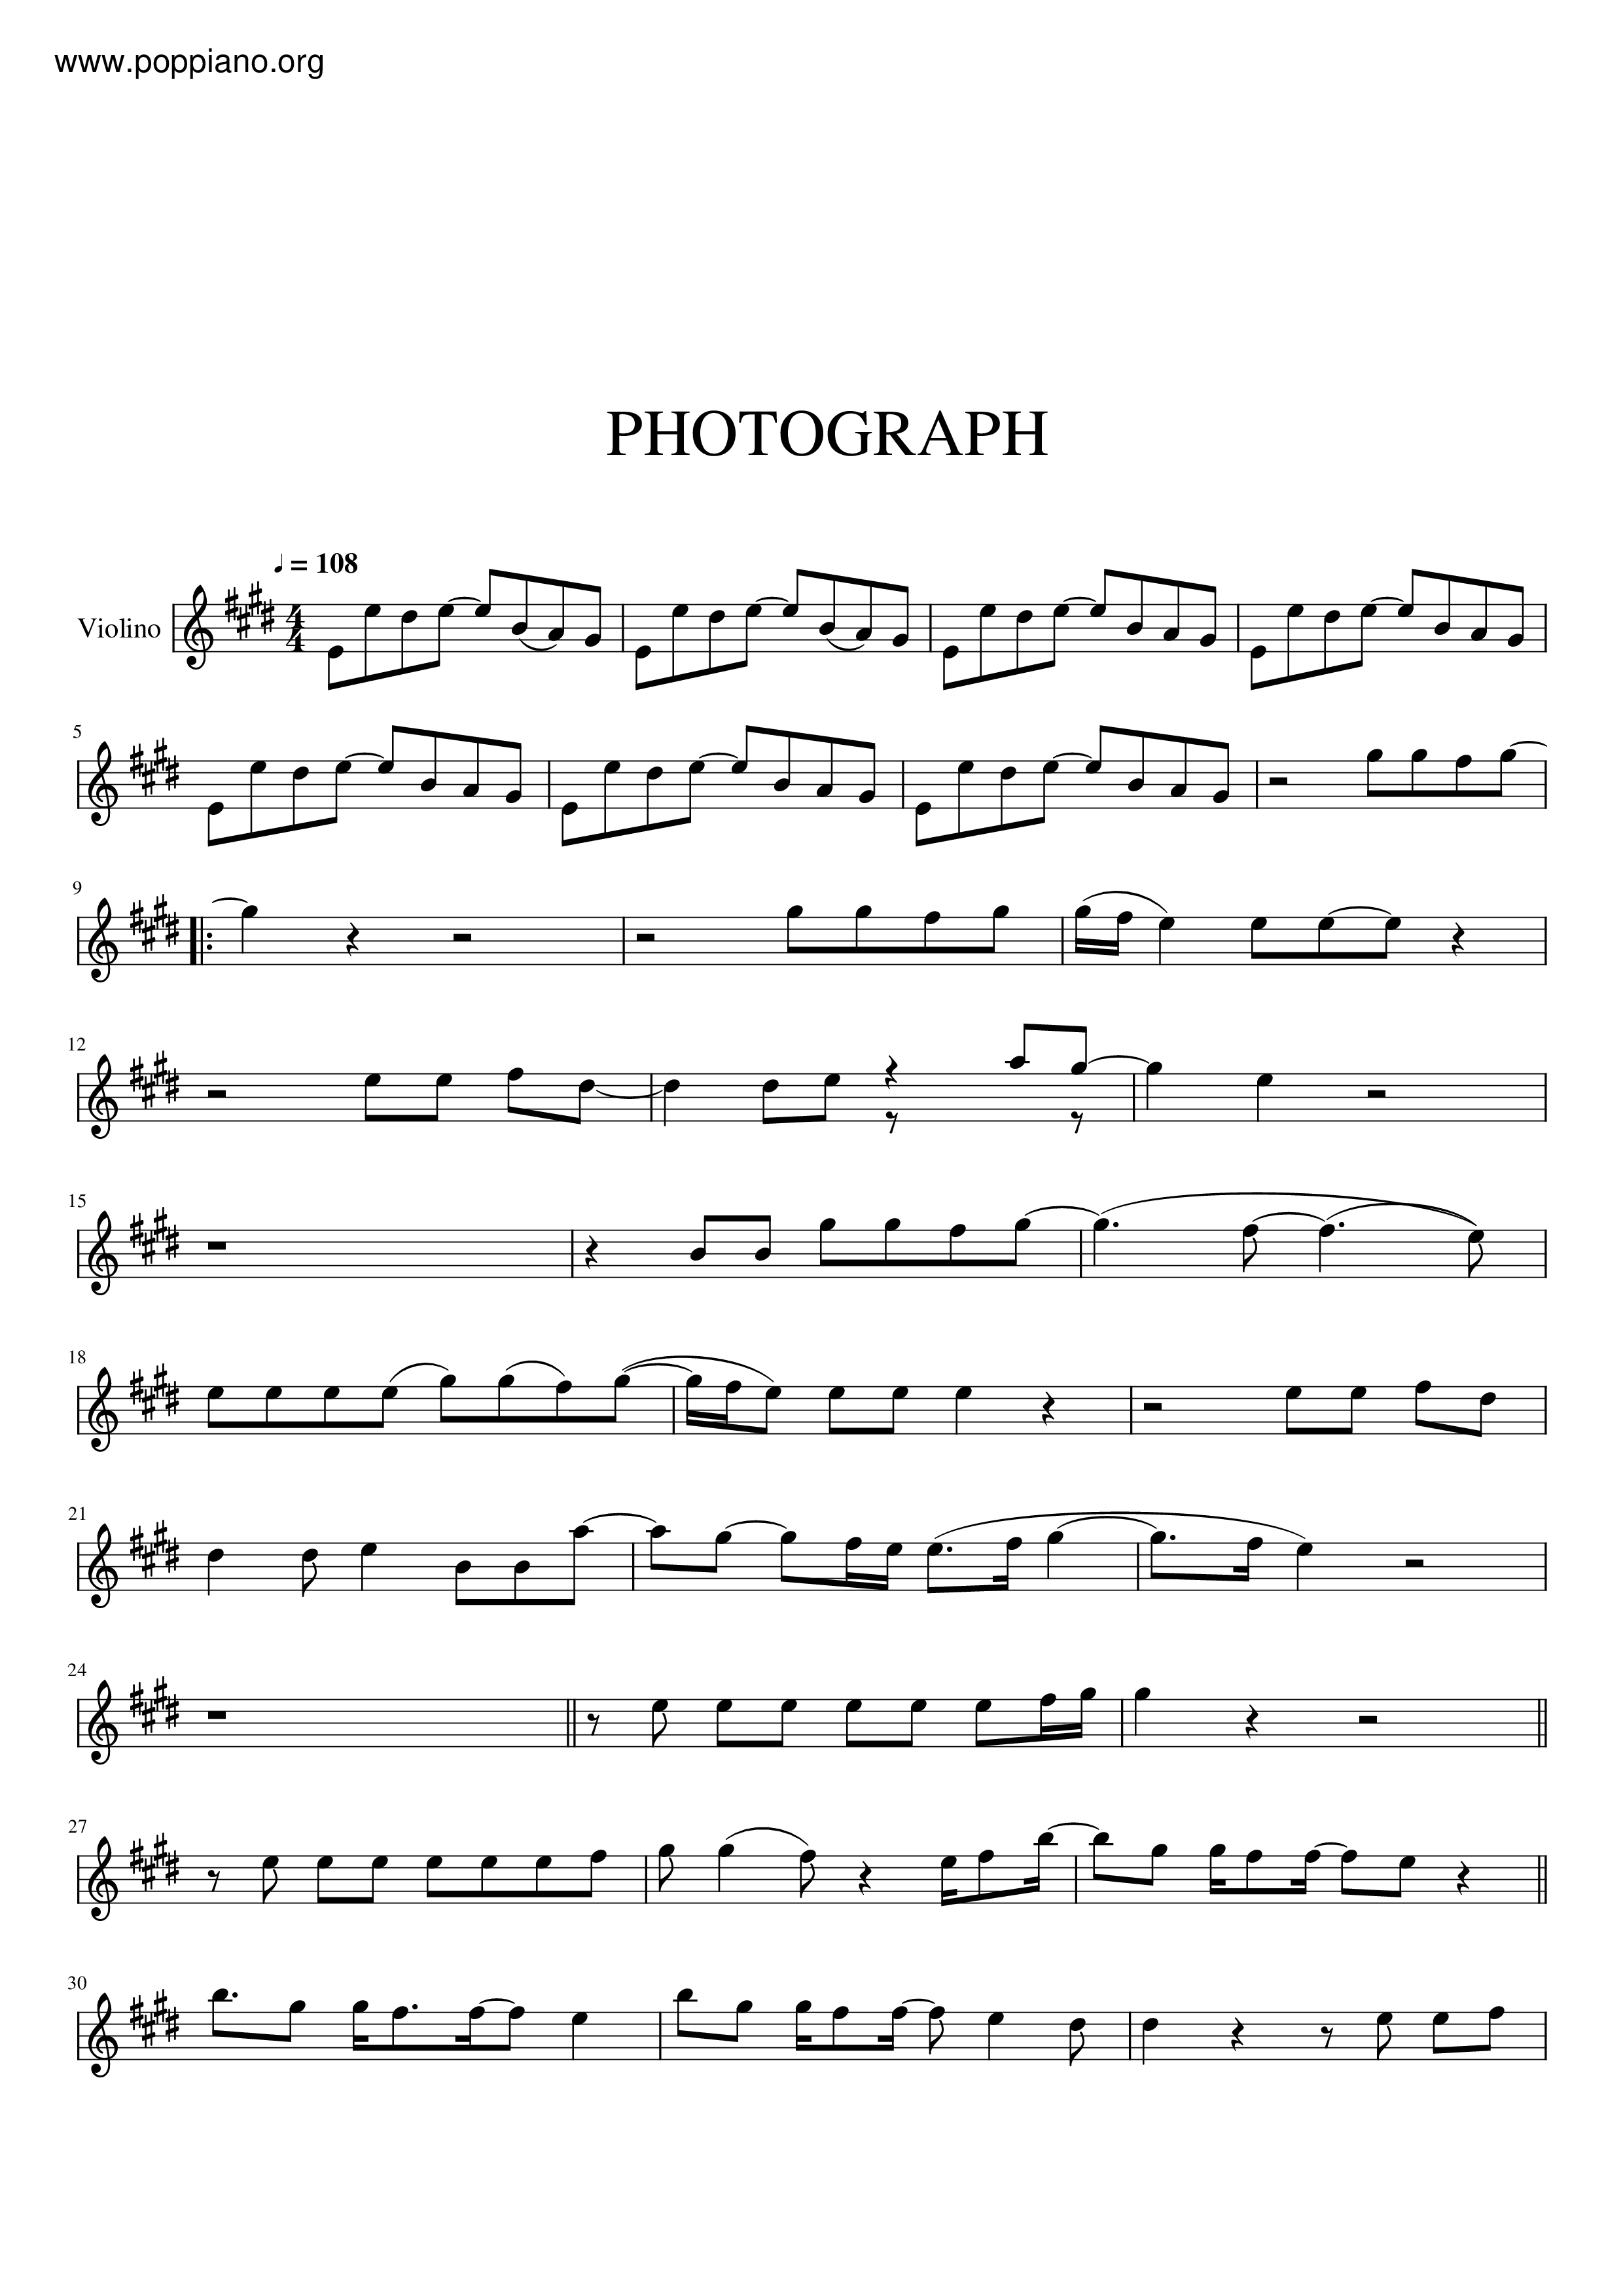 Photographピアノ譜